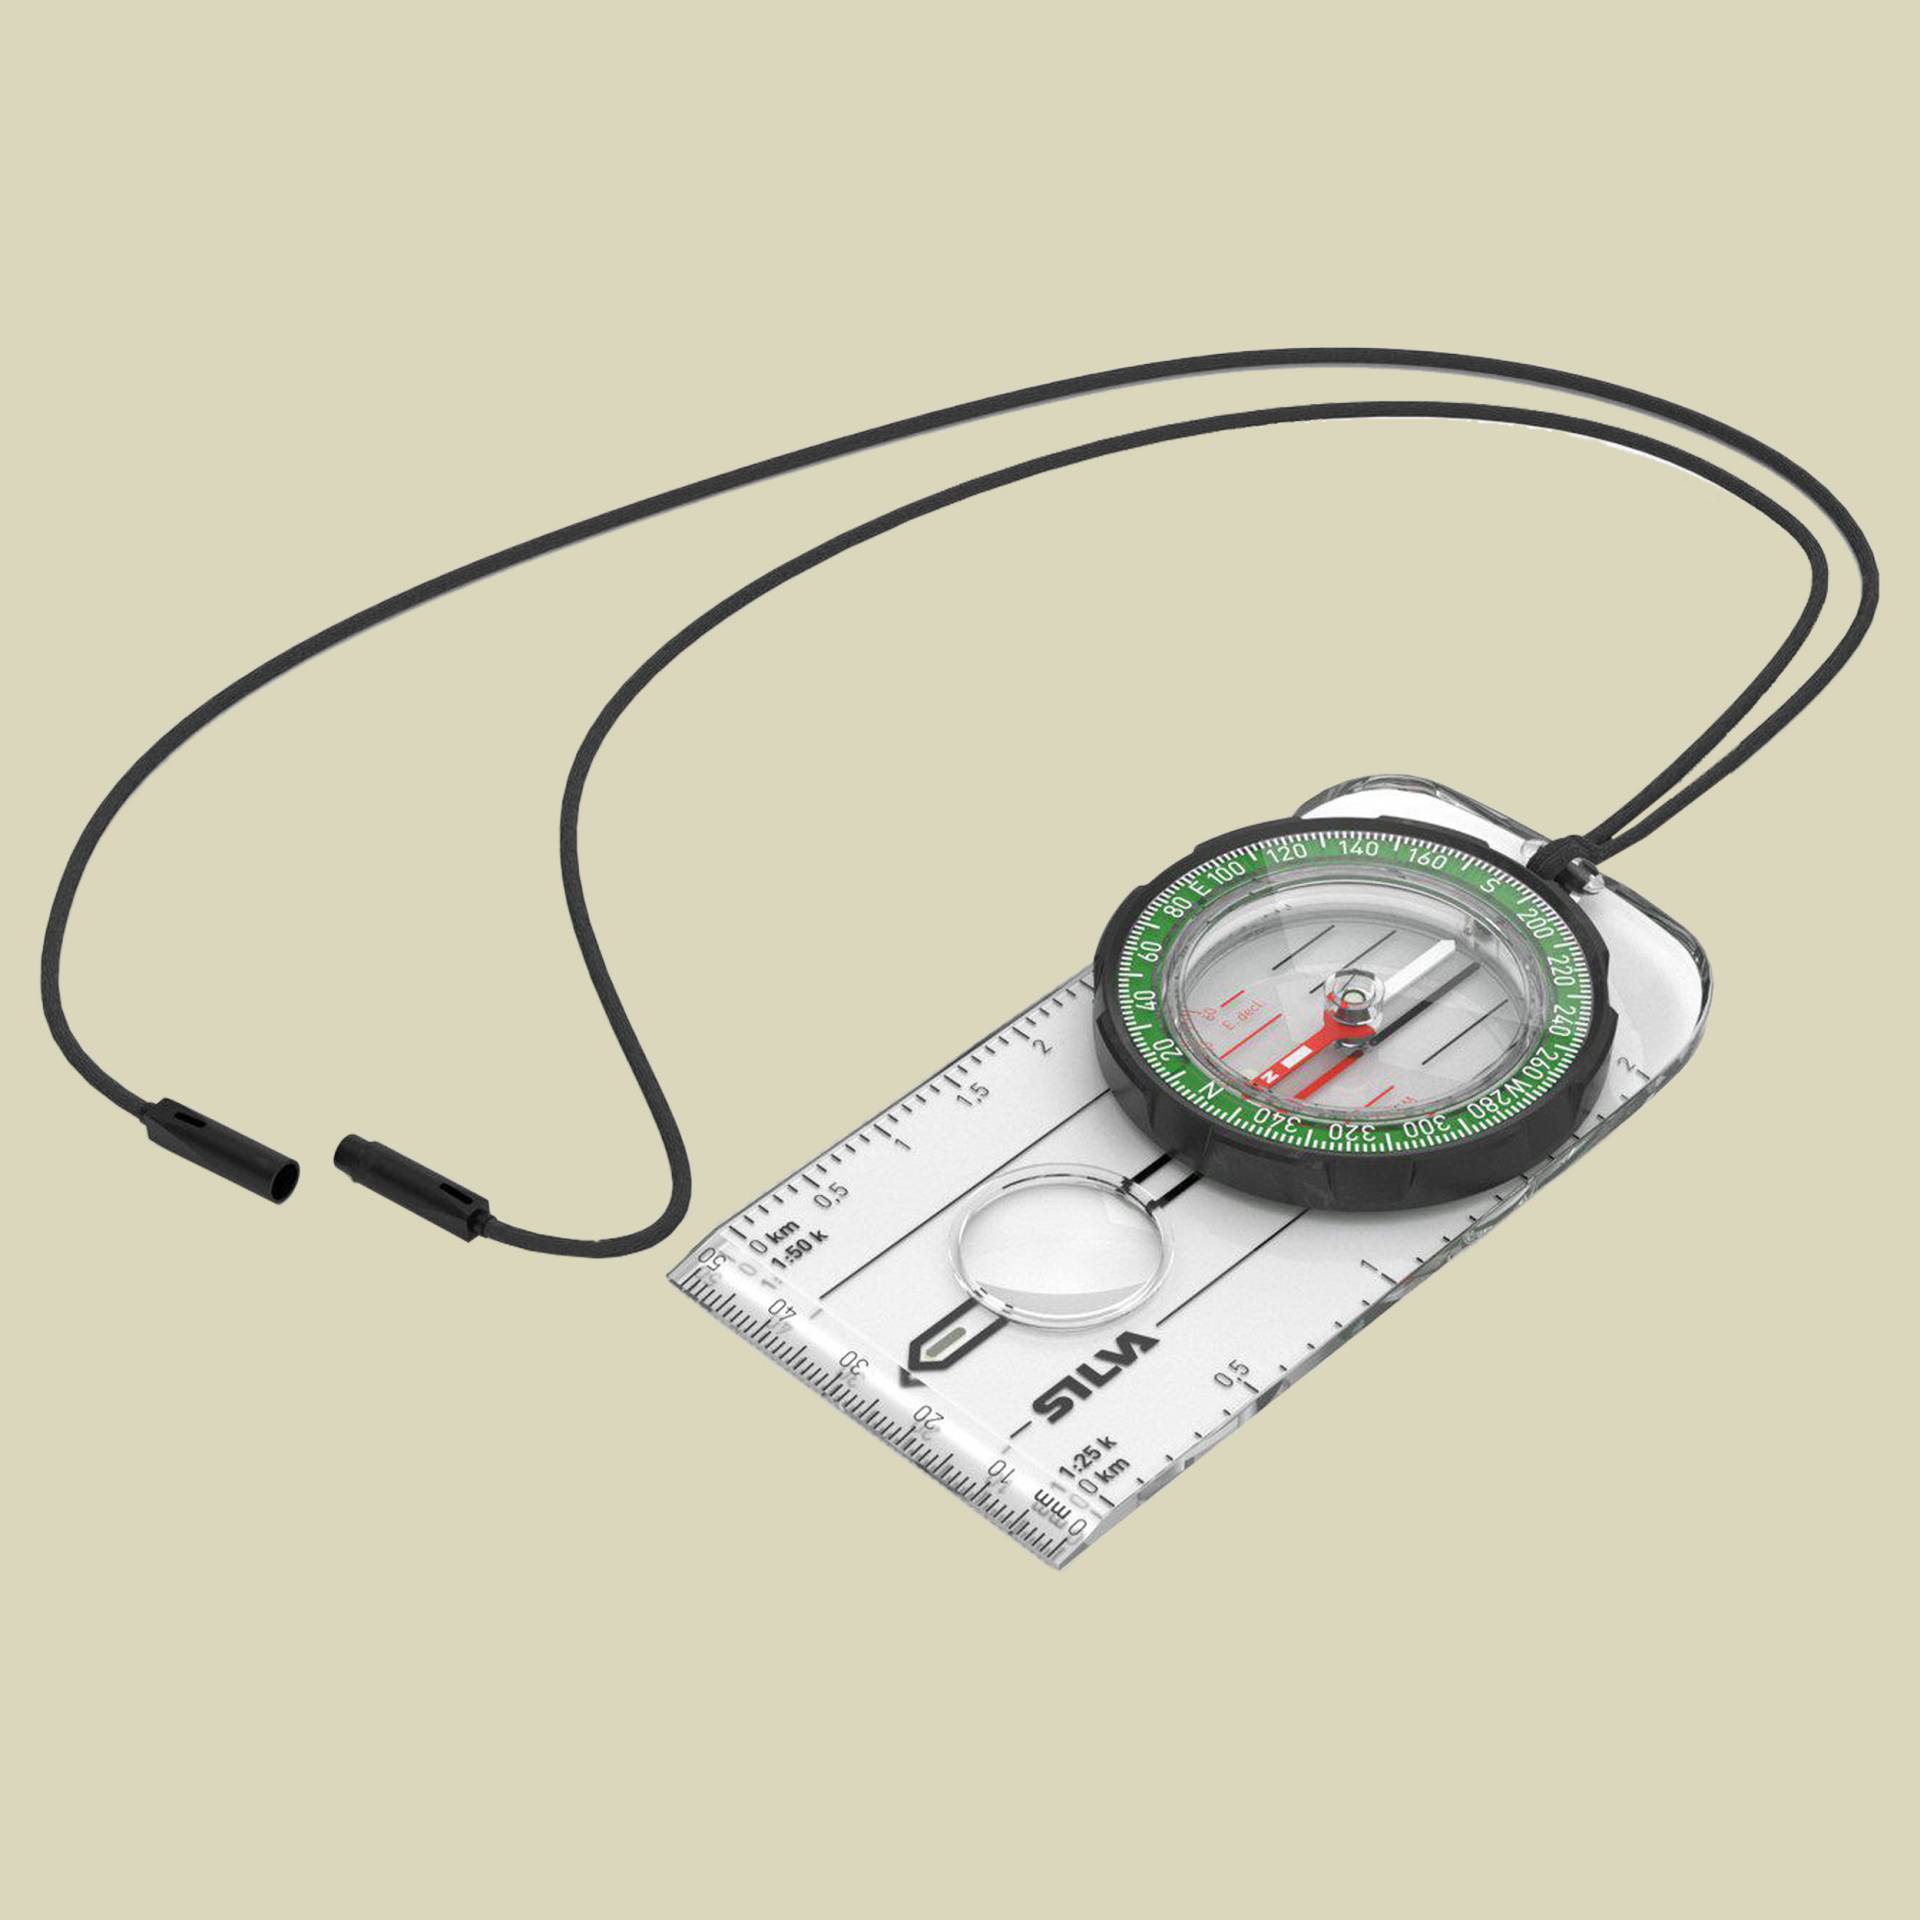 Kompass Ranger Maße: 10.7x5.4x1.1 cm von Silva